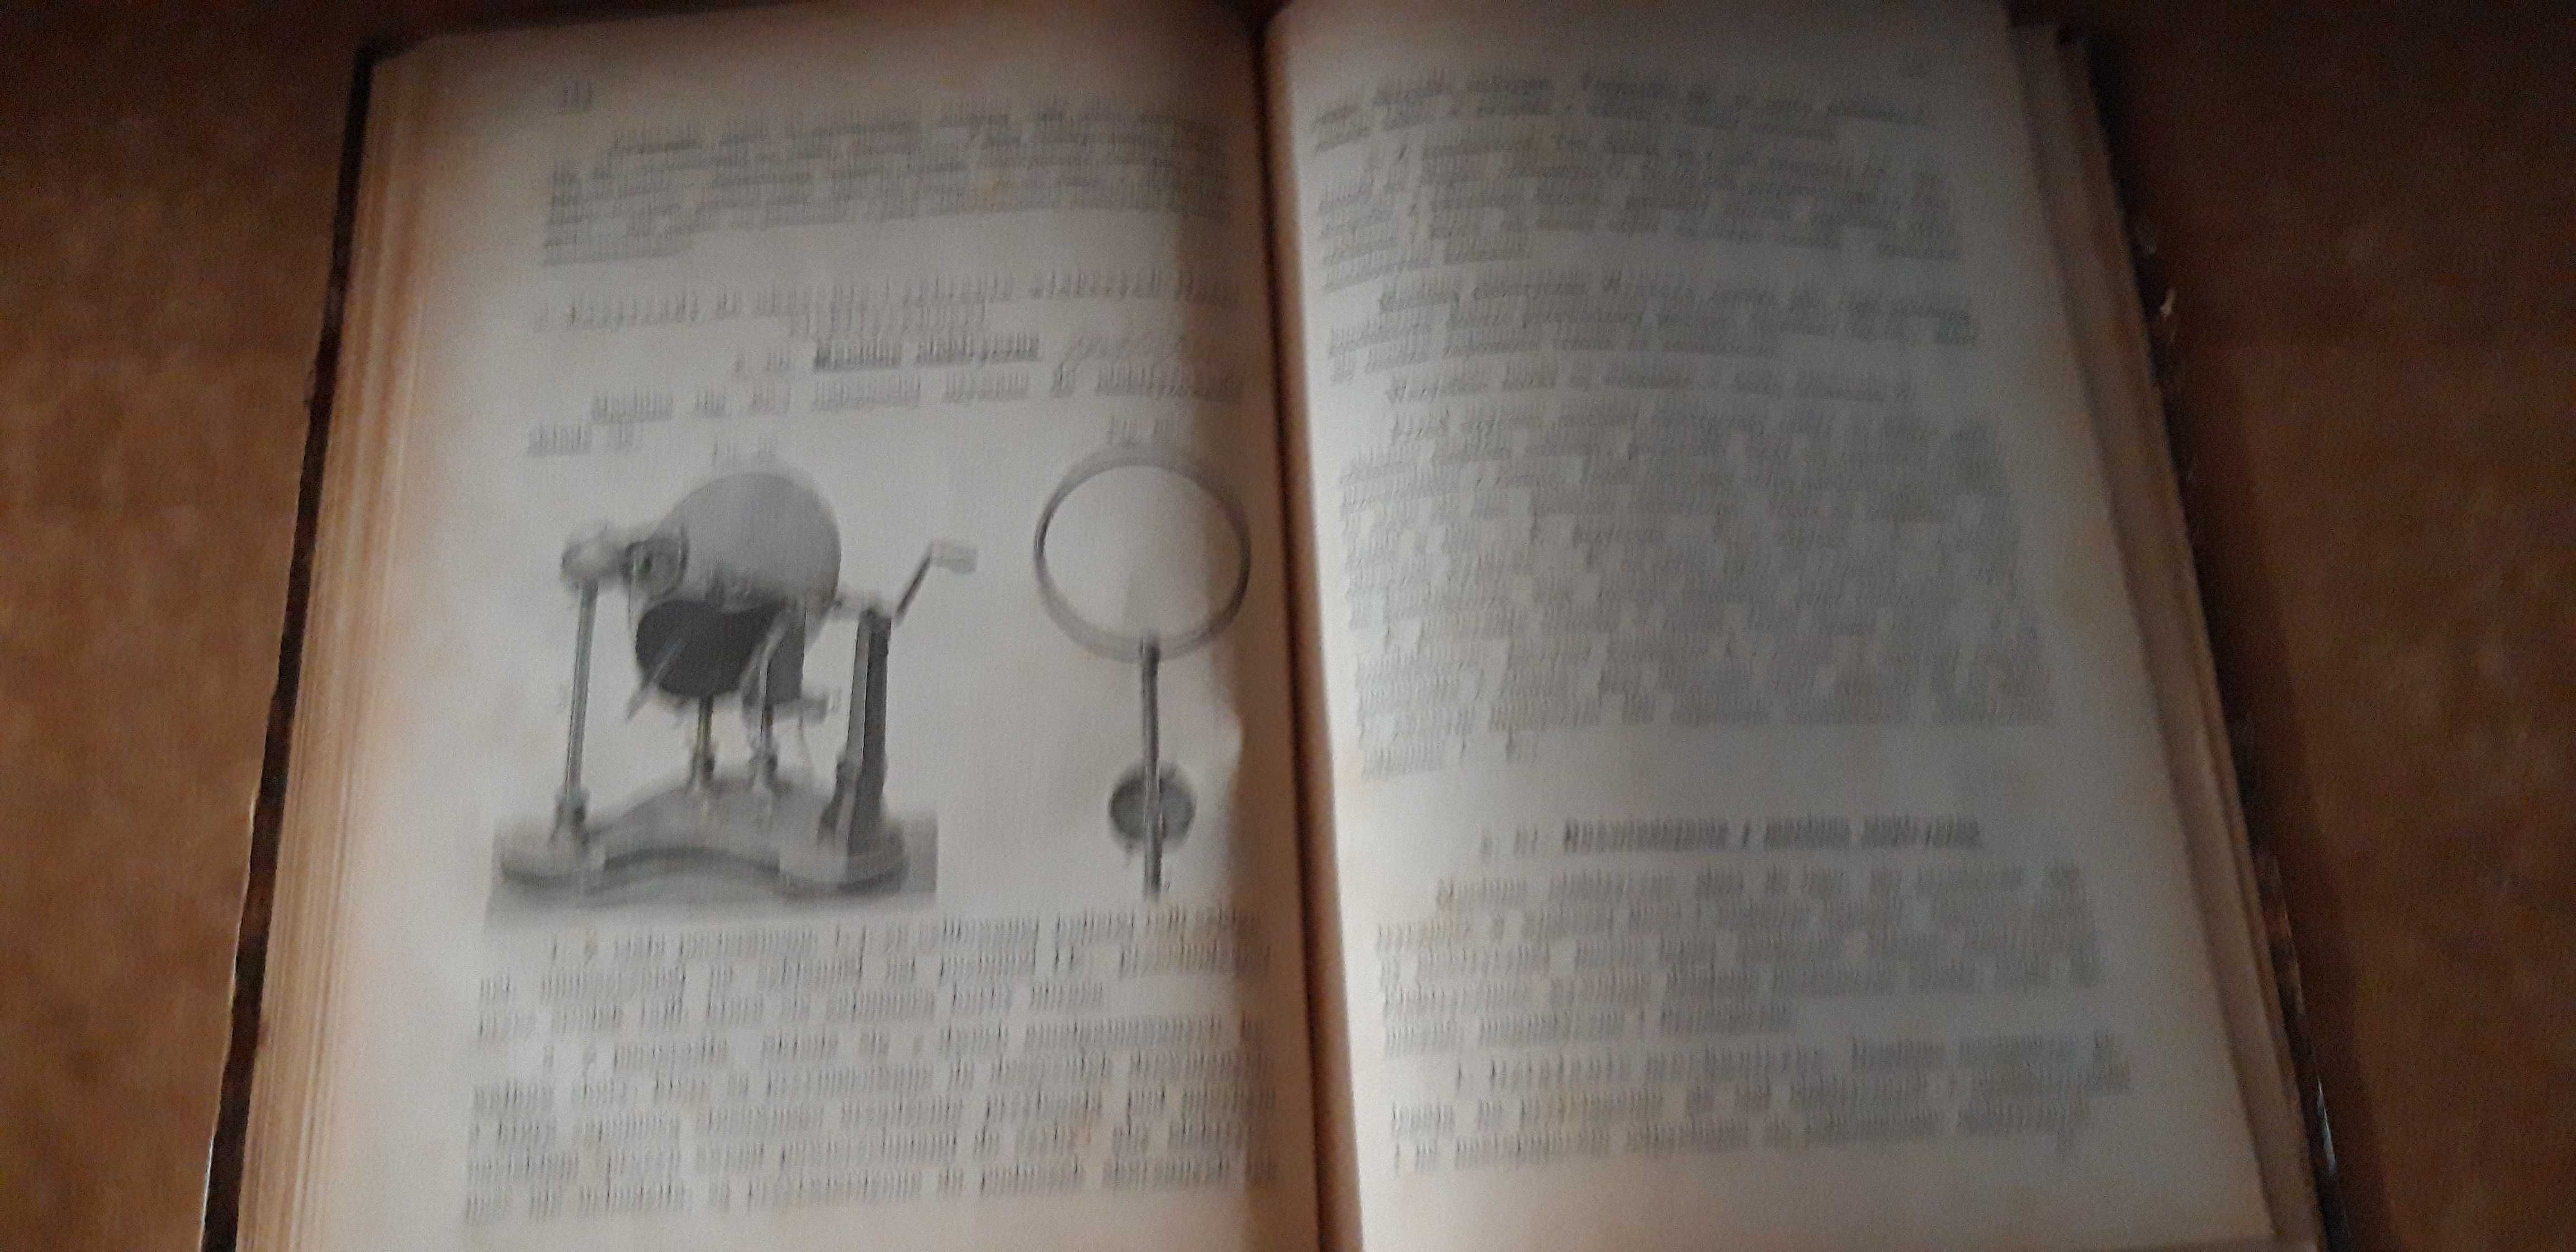 Nauka Fizyki i Chemii Dra A. Kauera -Wiedeń 1874 opr., drzeworyty